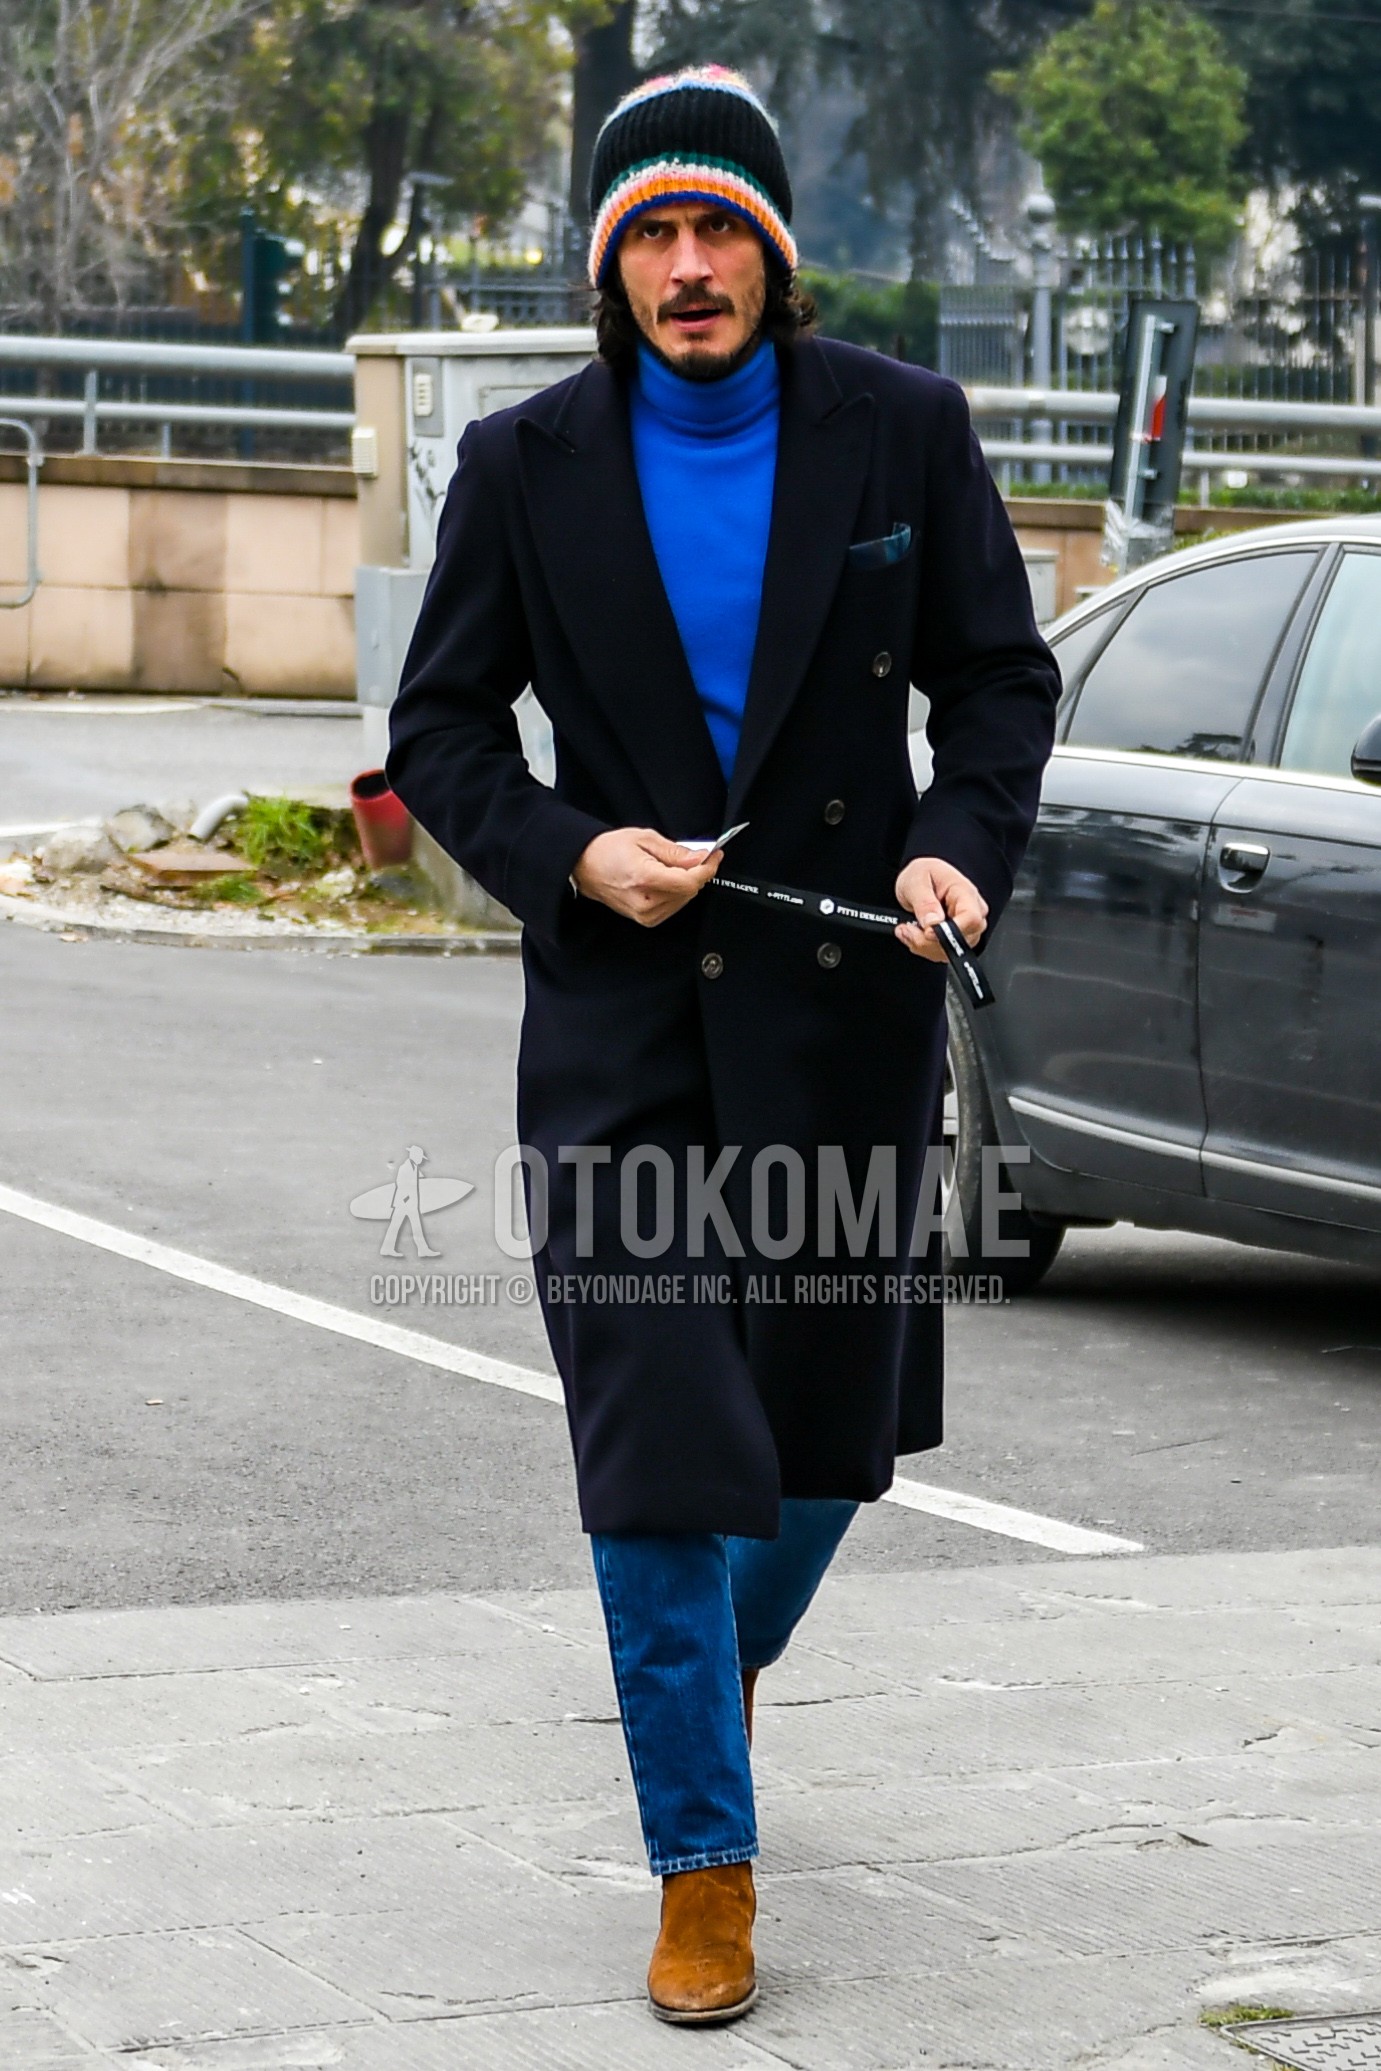 Men's autumn winter outfit with multi-color plain knit cap, black plain chester coat, blue plain turtleneck knit, blue plain denim/jeans, beige side-gore boots.